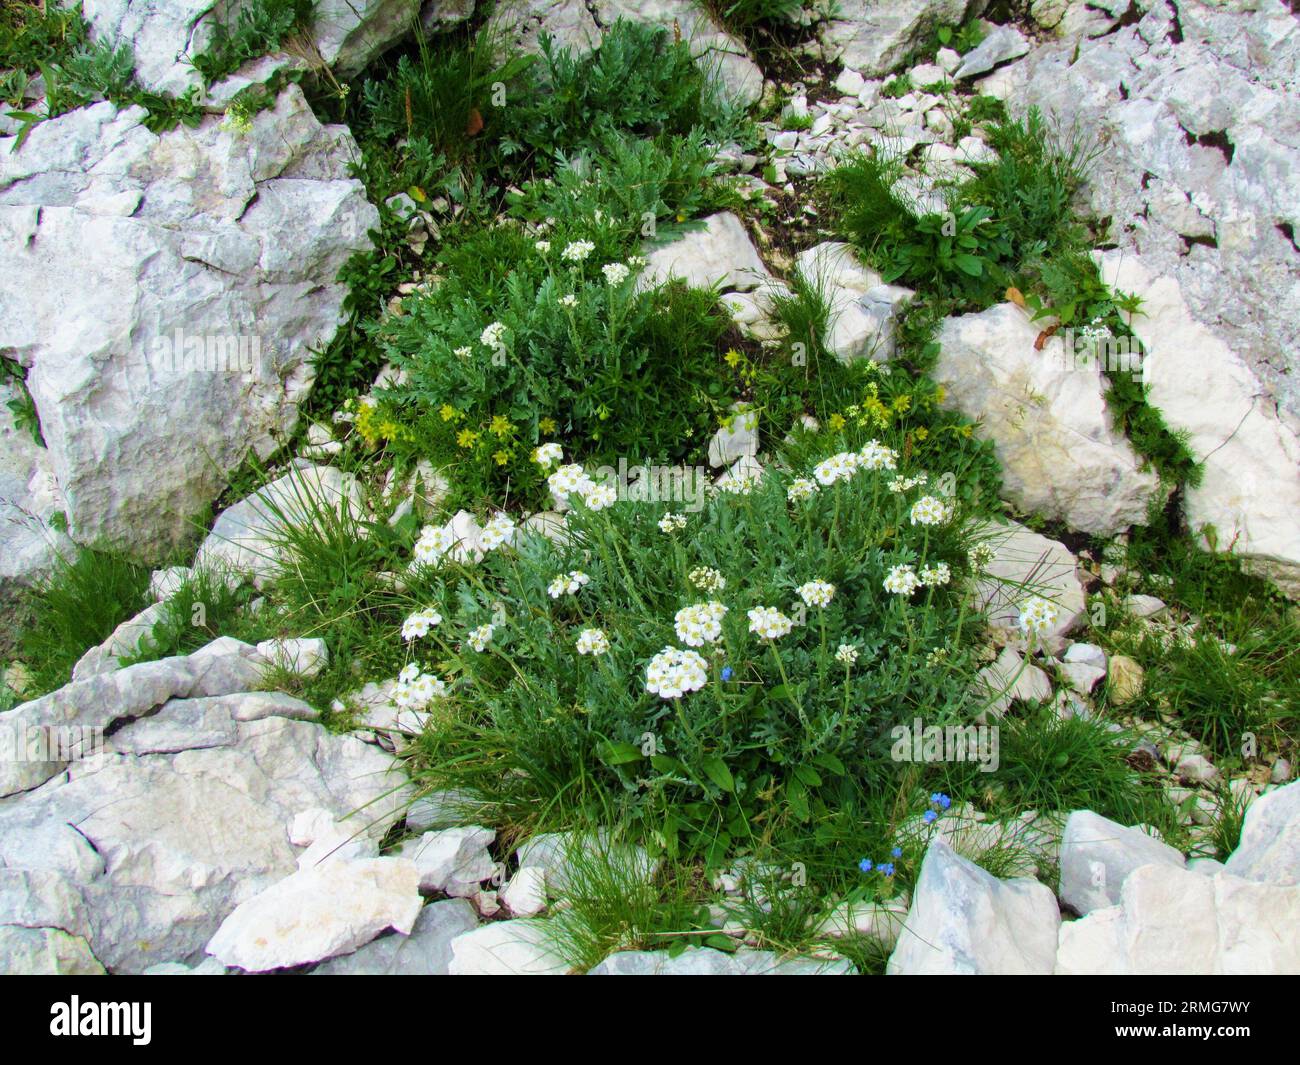 White blooming silvery yarrow (Achillea clavennae) flowers growing in rocky terrain Stock Photo